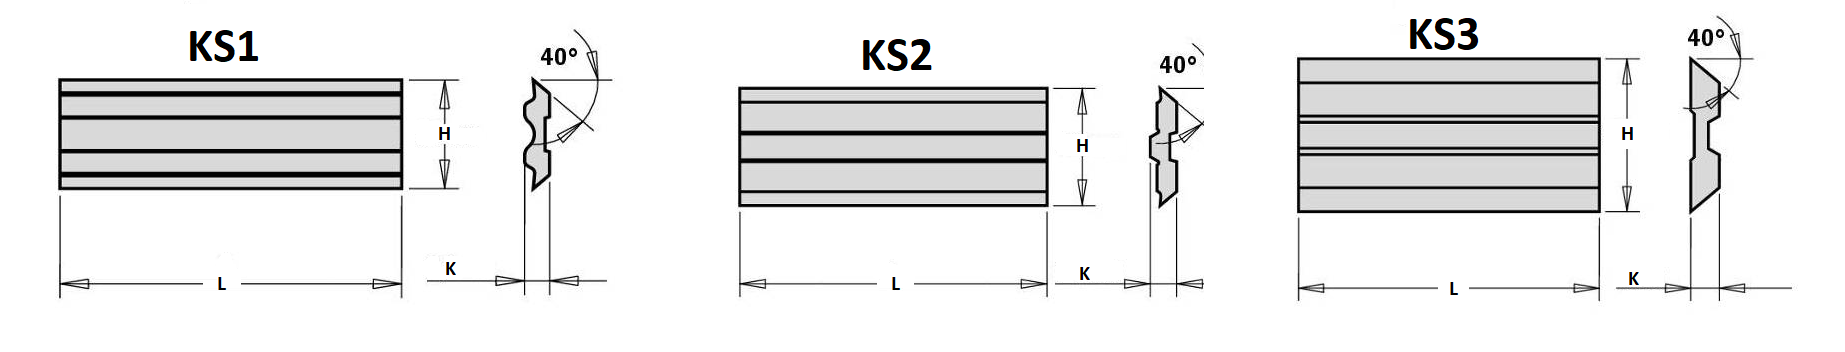 KH-HK - KS1-KS2-KS3